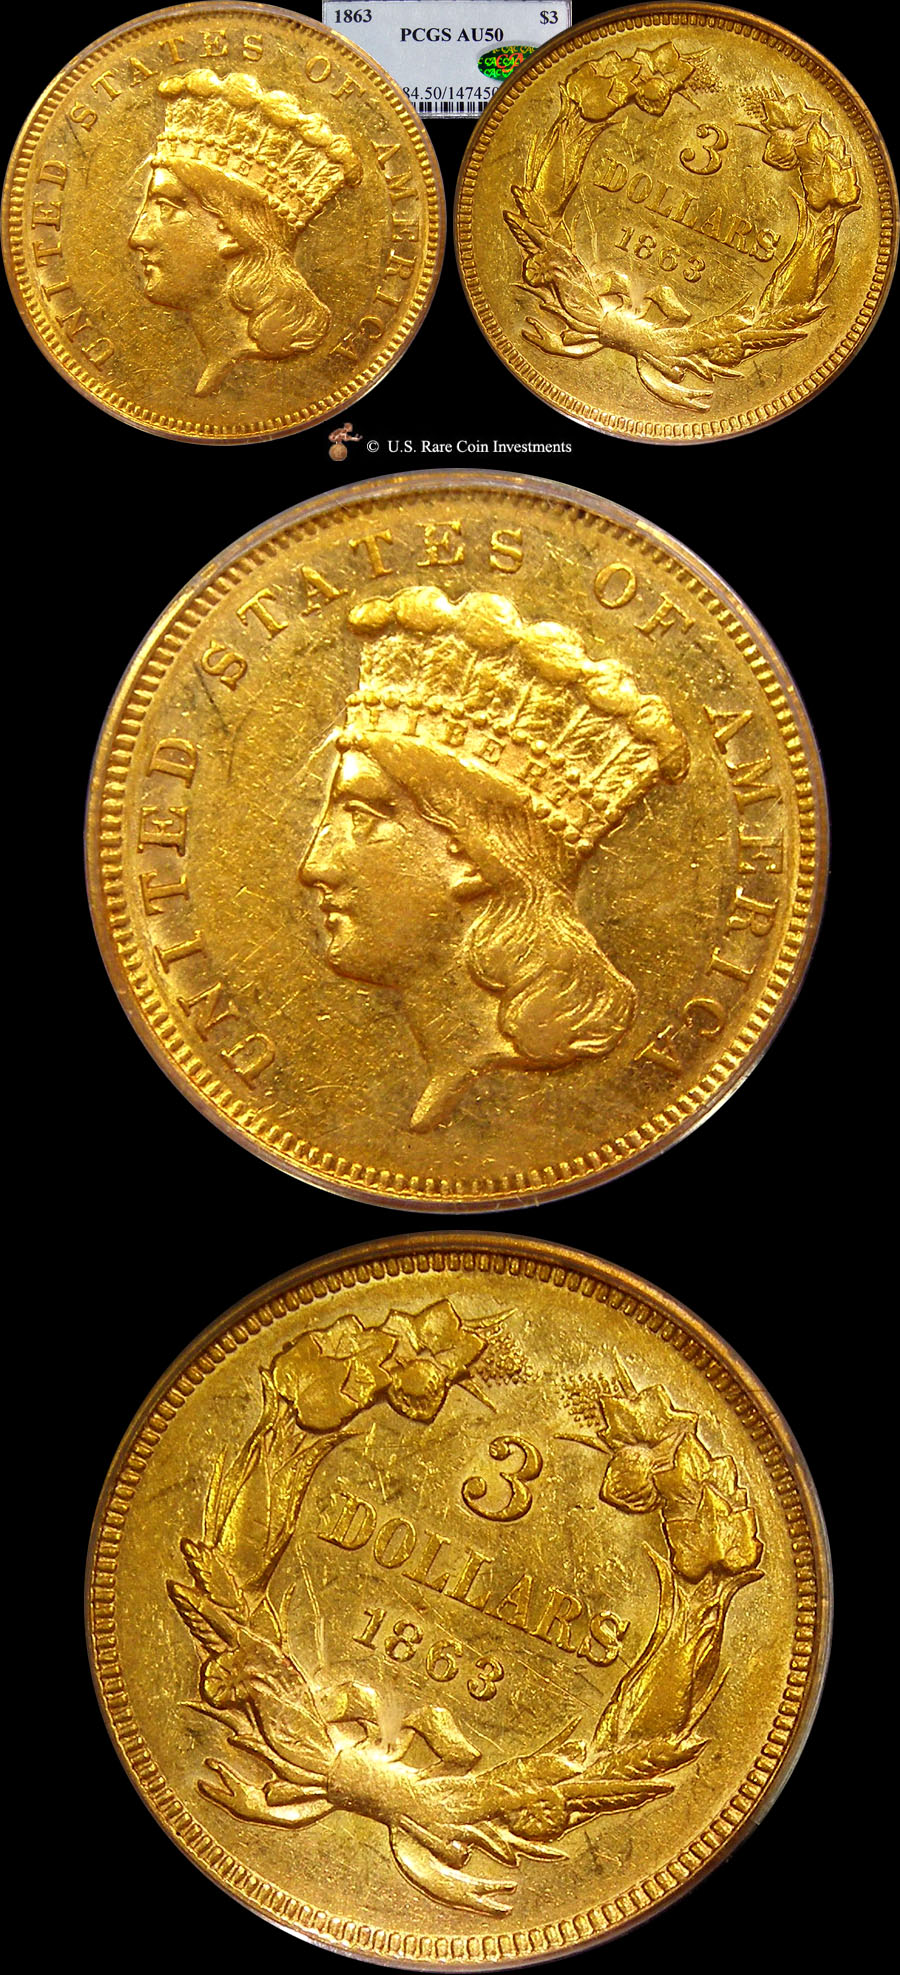 Rare Coins - Gold Coins - Rare Coin Dealer - Rare Gold Coin Investments